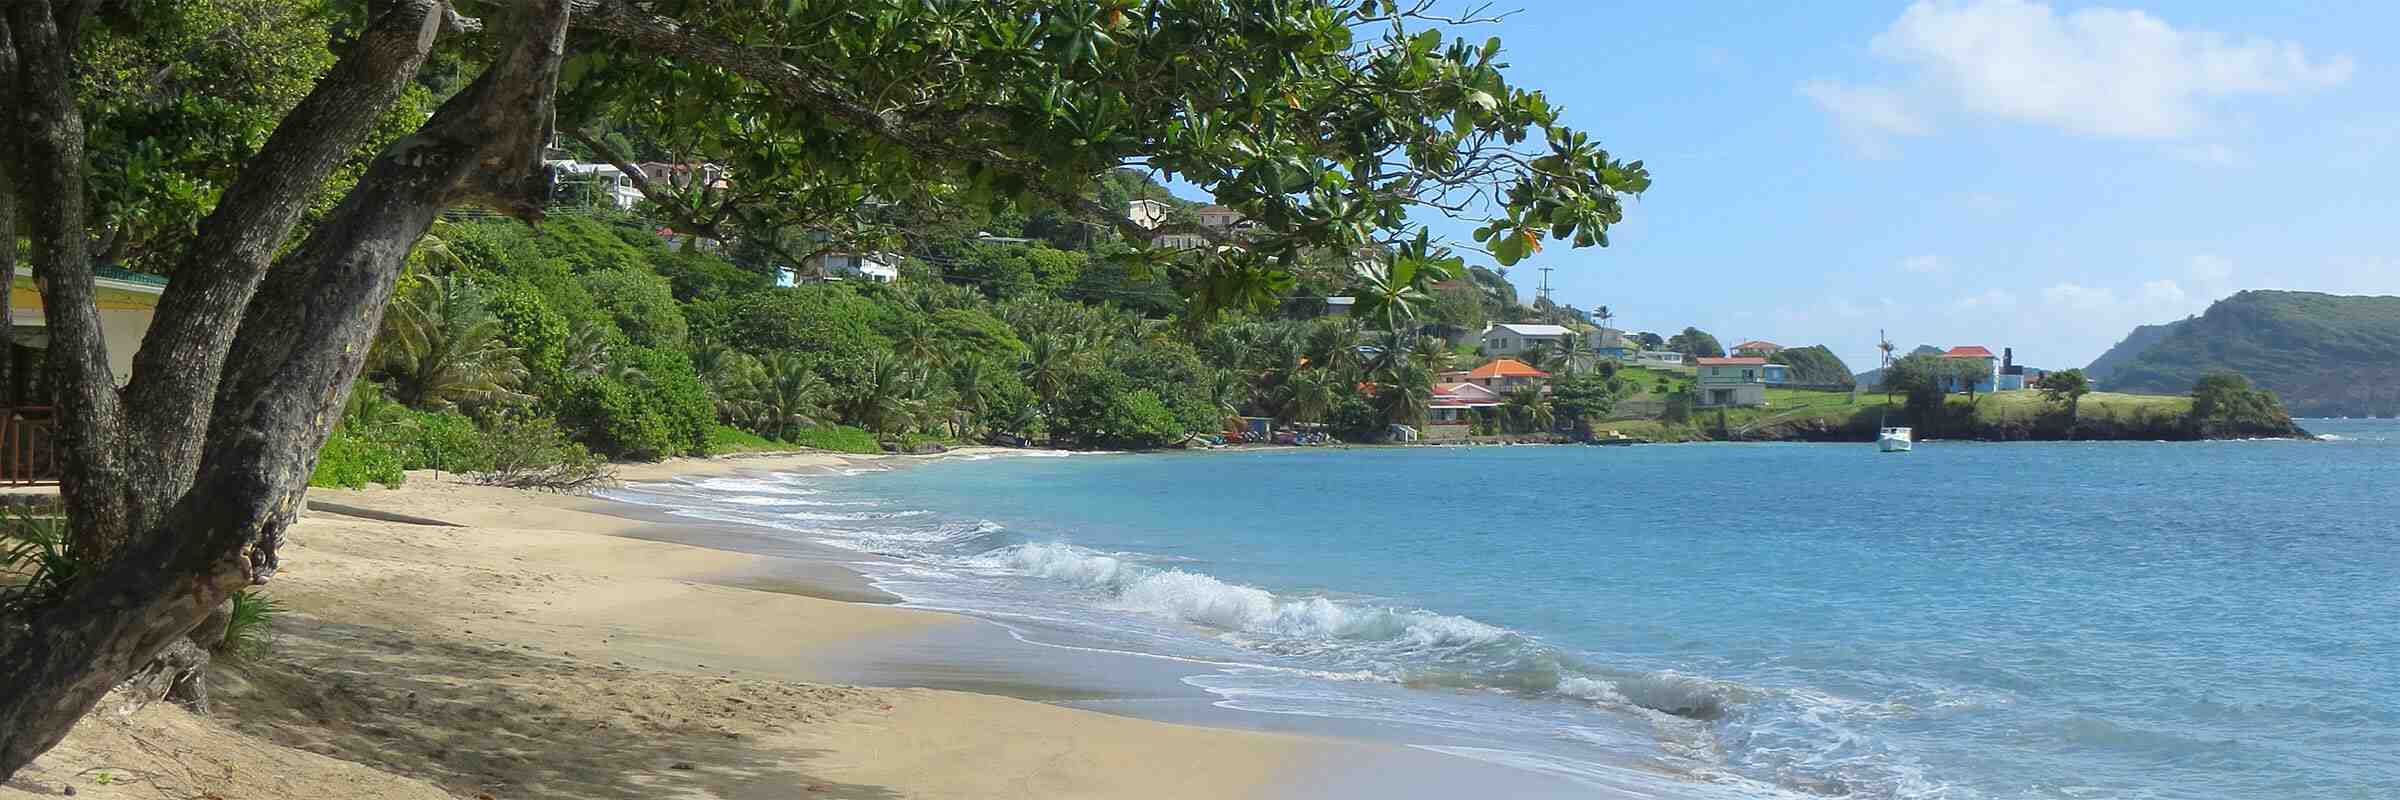 Qual è l'isola più bella Guadalupa o Martinica?